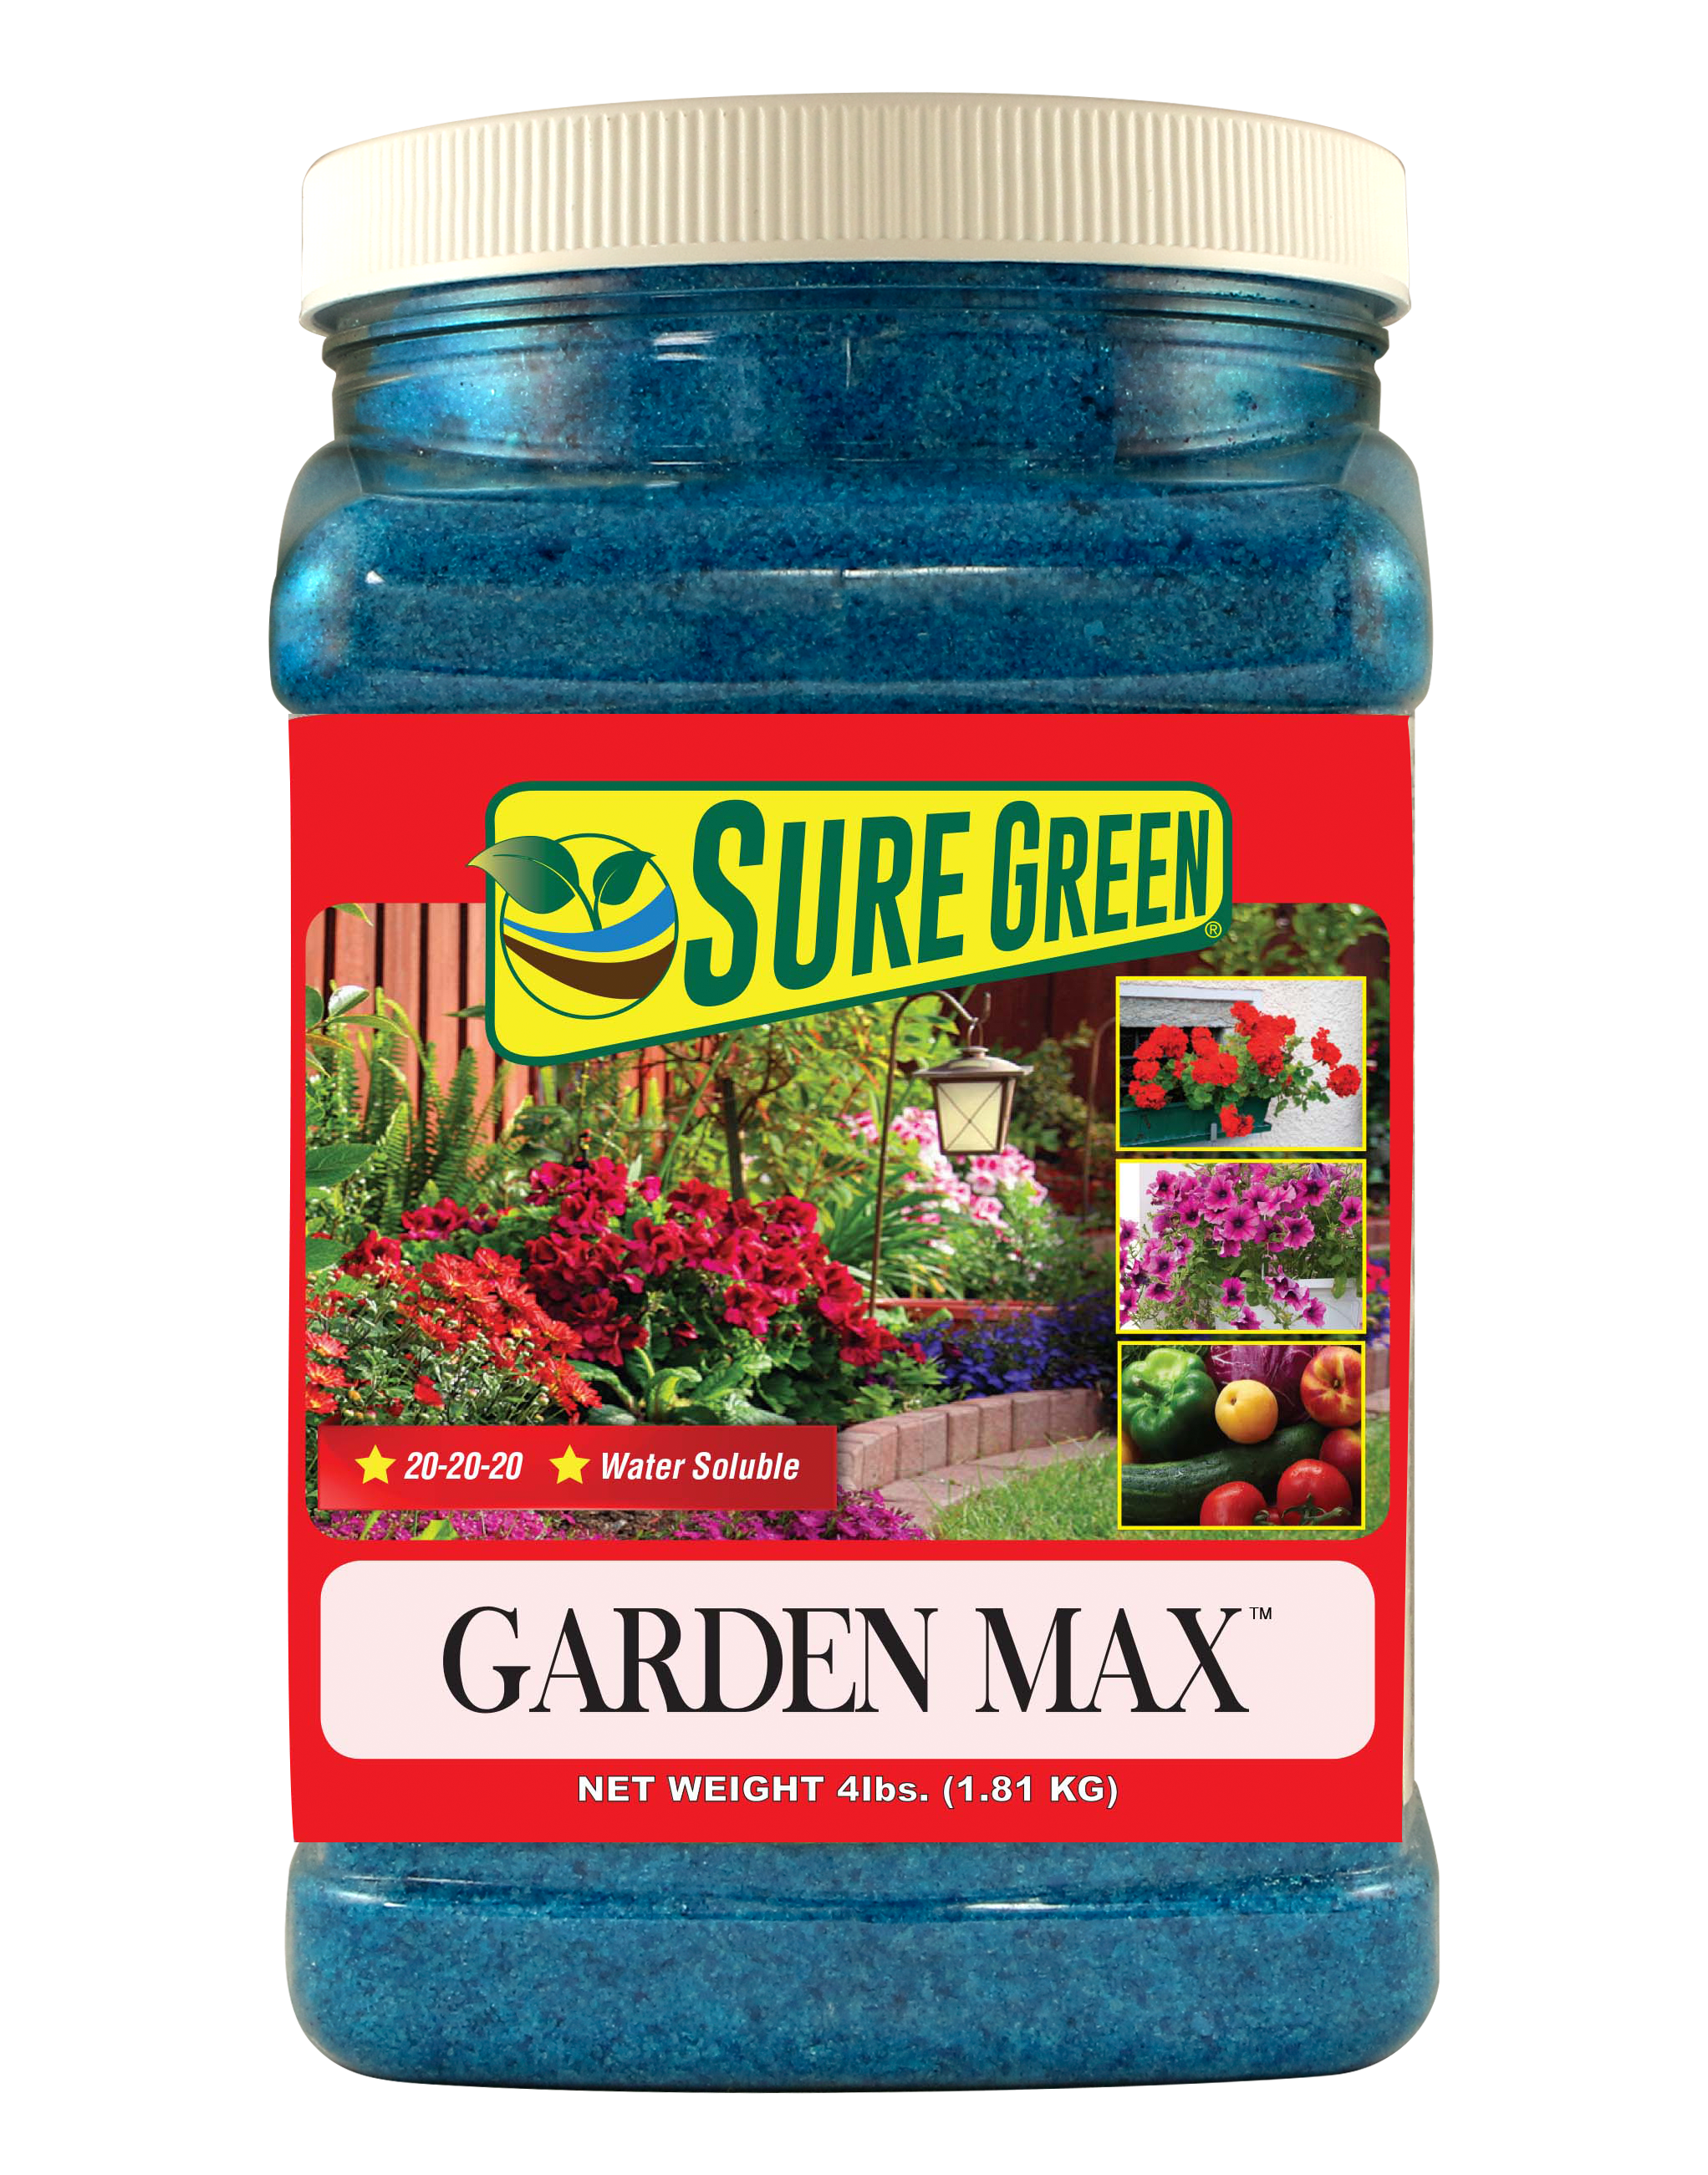 Garden Max Label